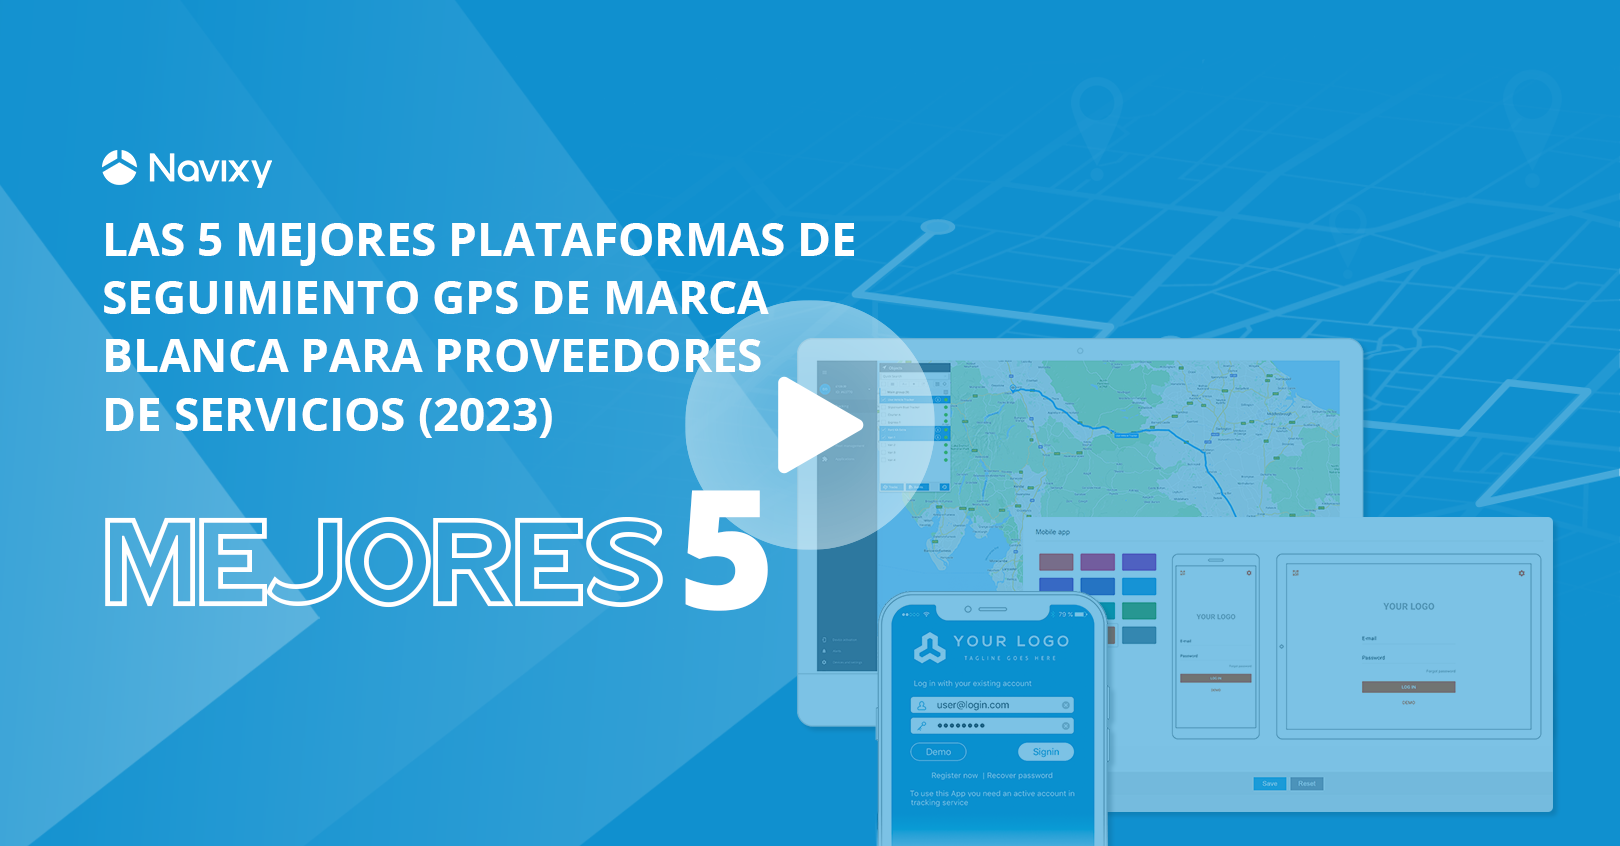 Las 5 mejores plataformas de rastreo GPS de marca blanca (2023)